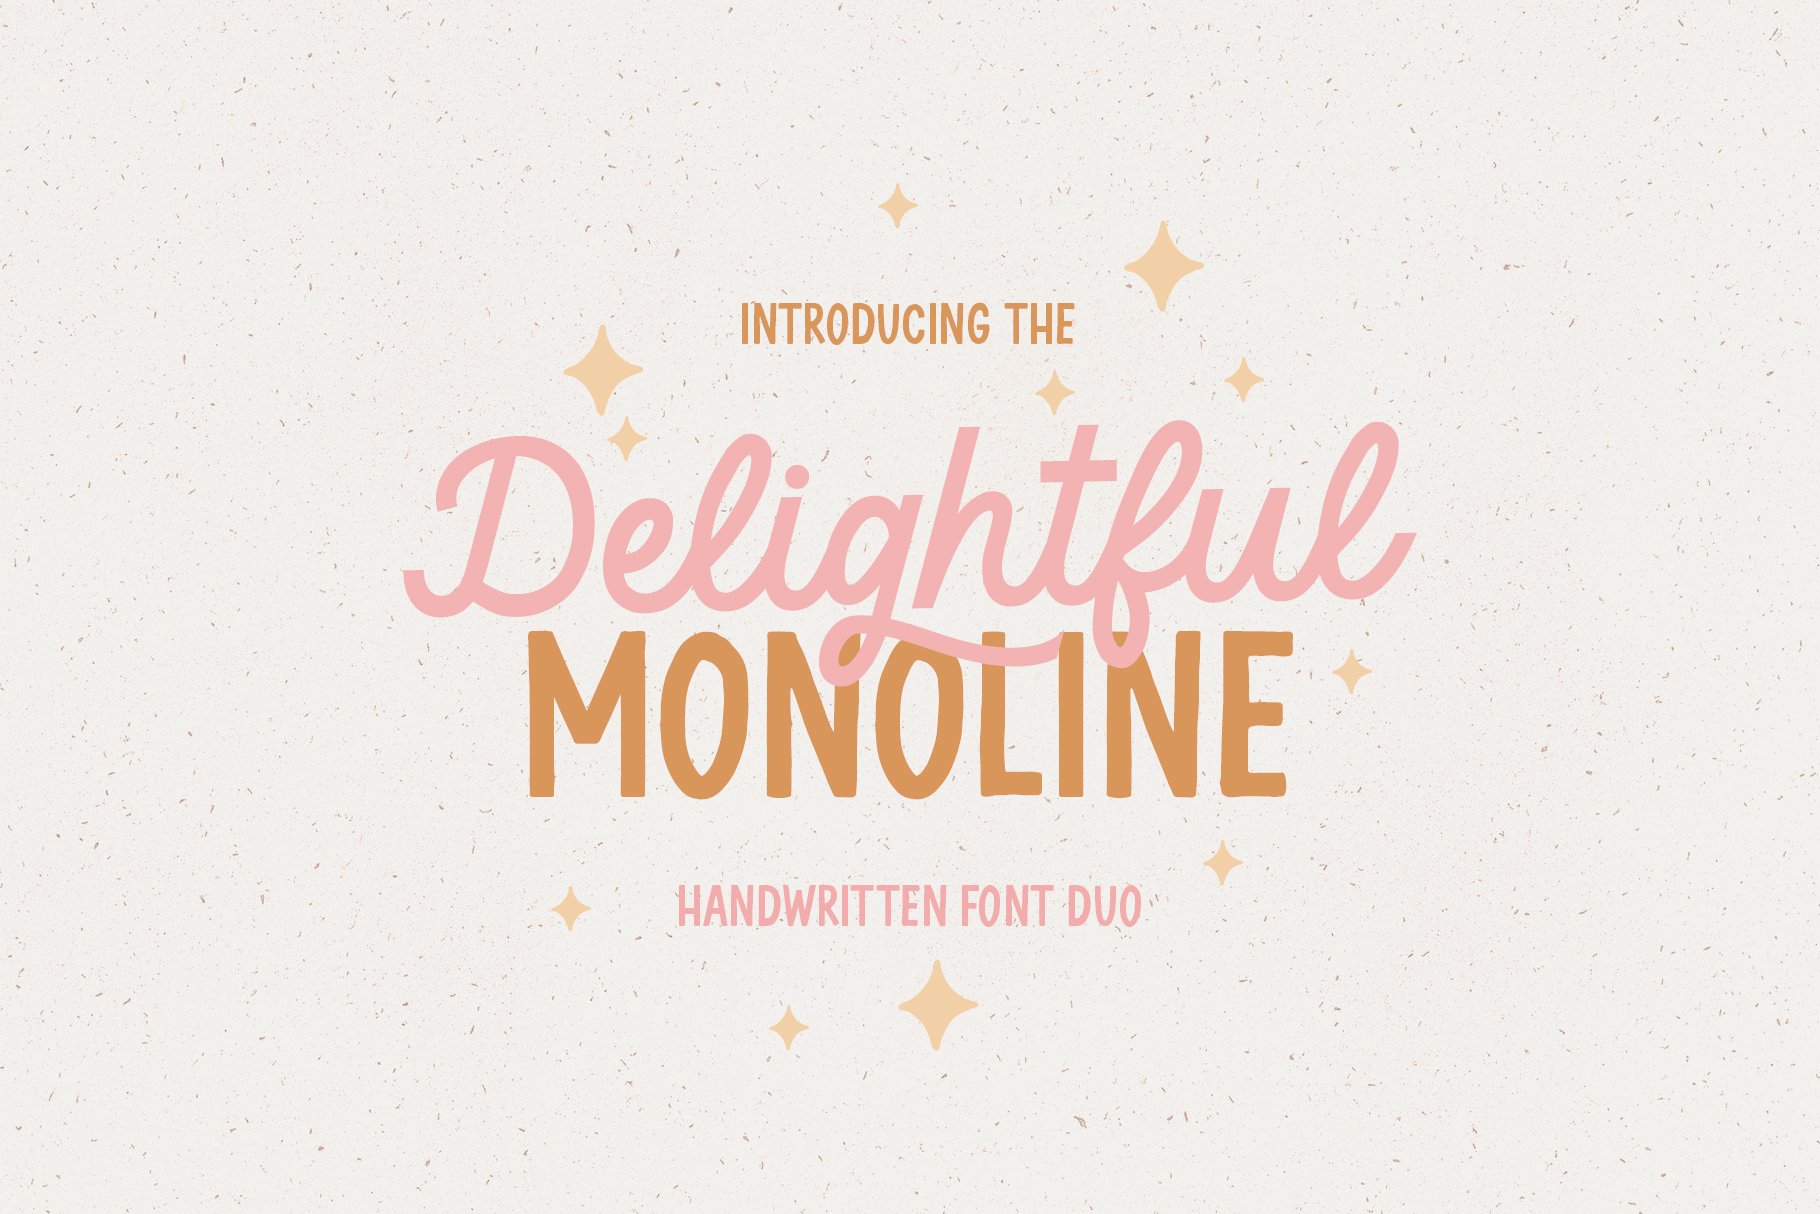 Delightful Monoline DUO cover image.